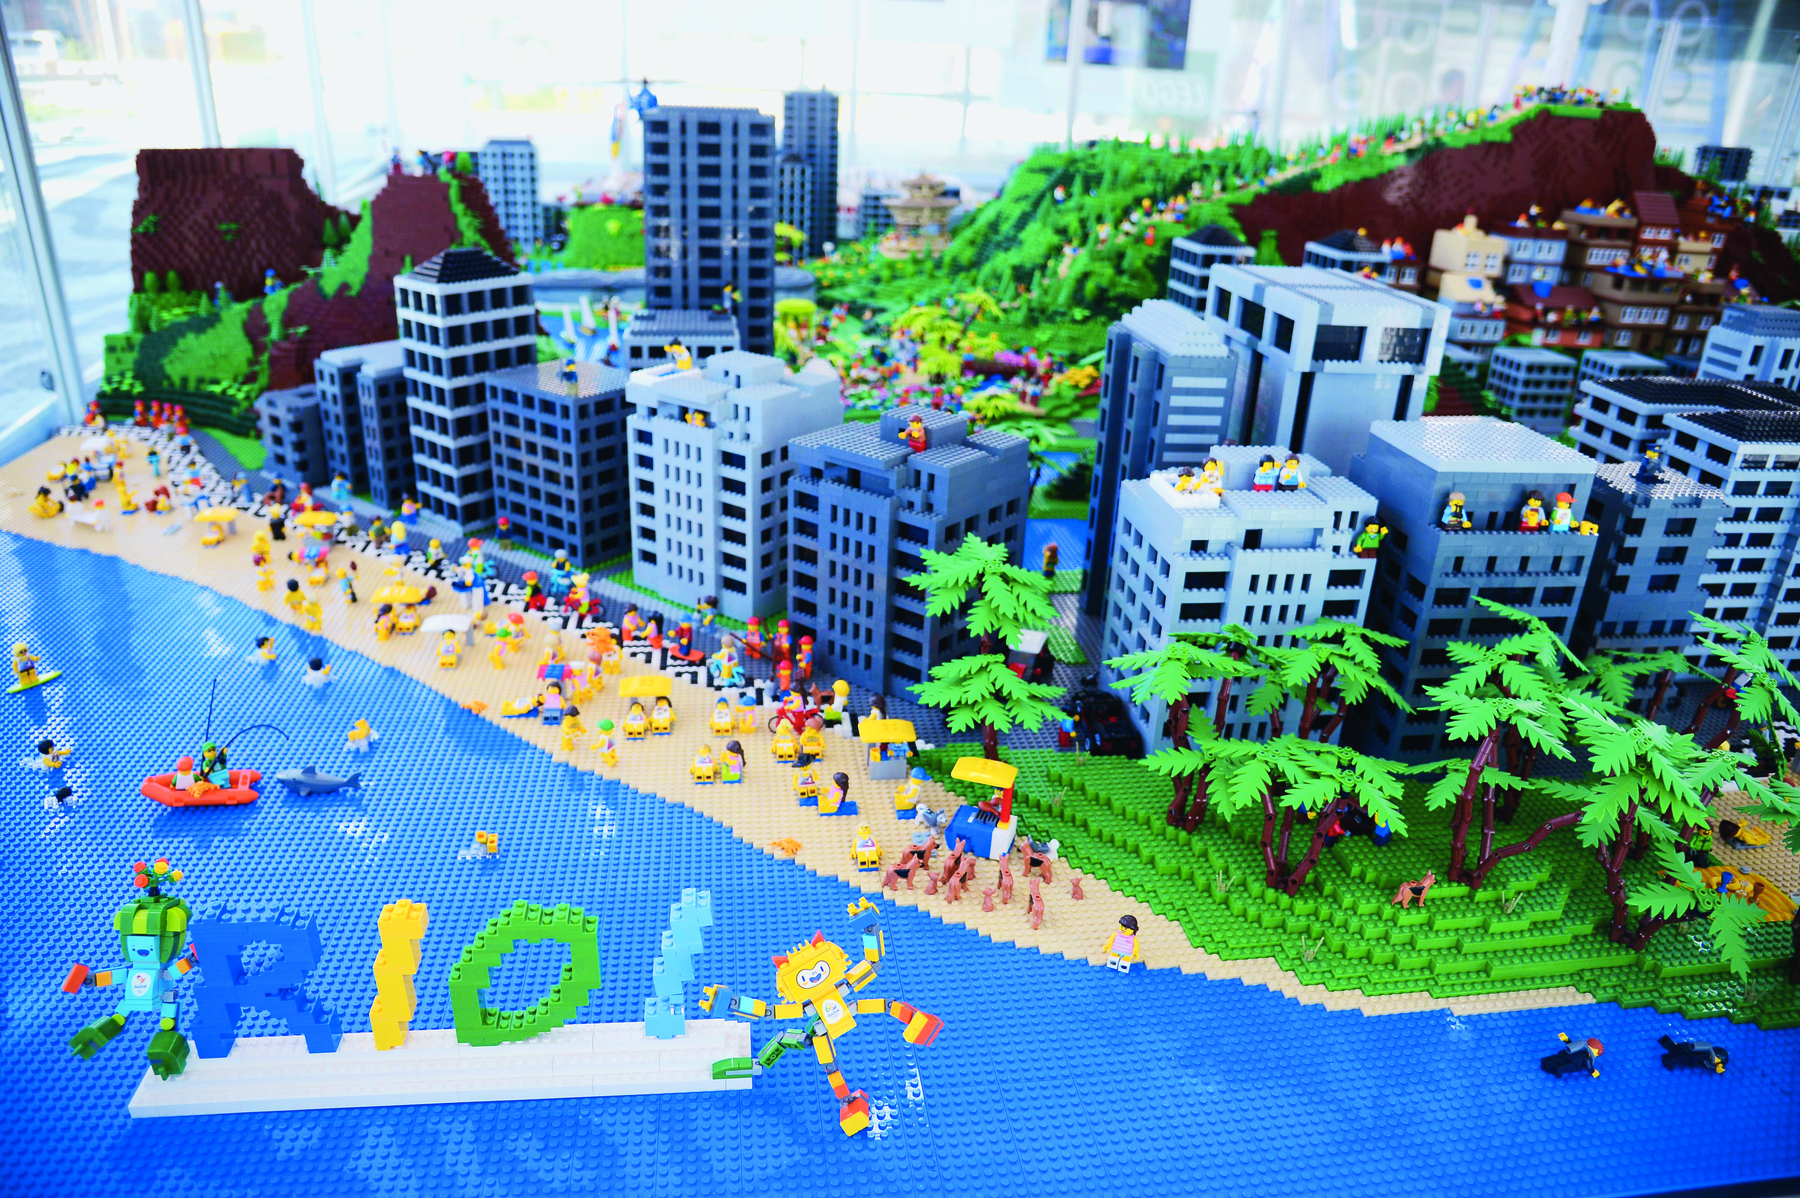 Maquete. A imagem mostra uma maquete, construída com peças de montar, que representa a orla da praia da cidade do Rio de Janeiro, ou seja, com presença de mar, praia e prédios. Ao fundo, morros com construções na encosta.